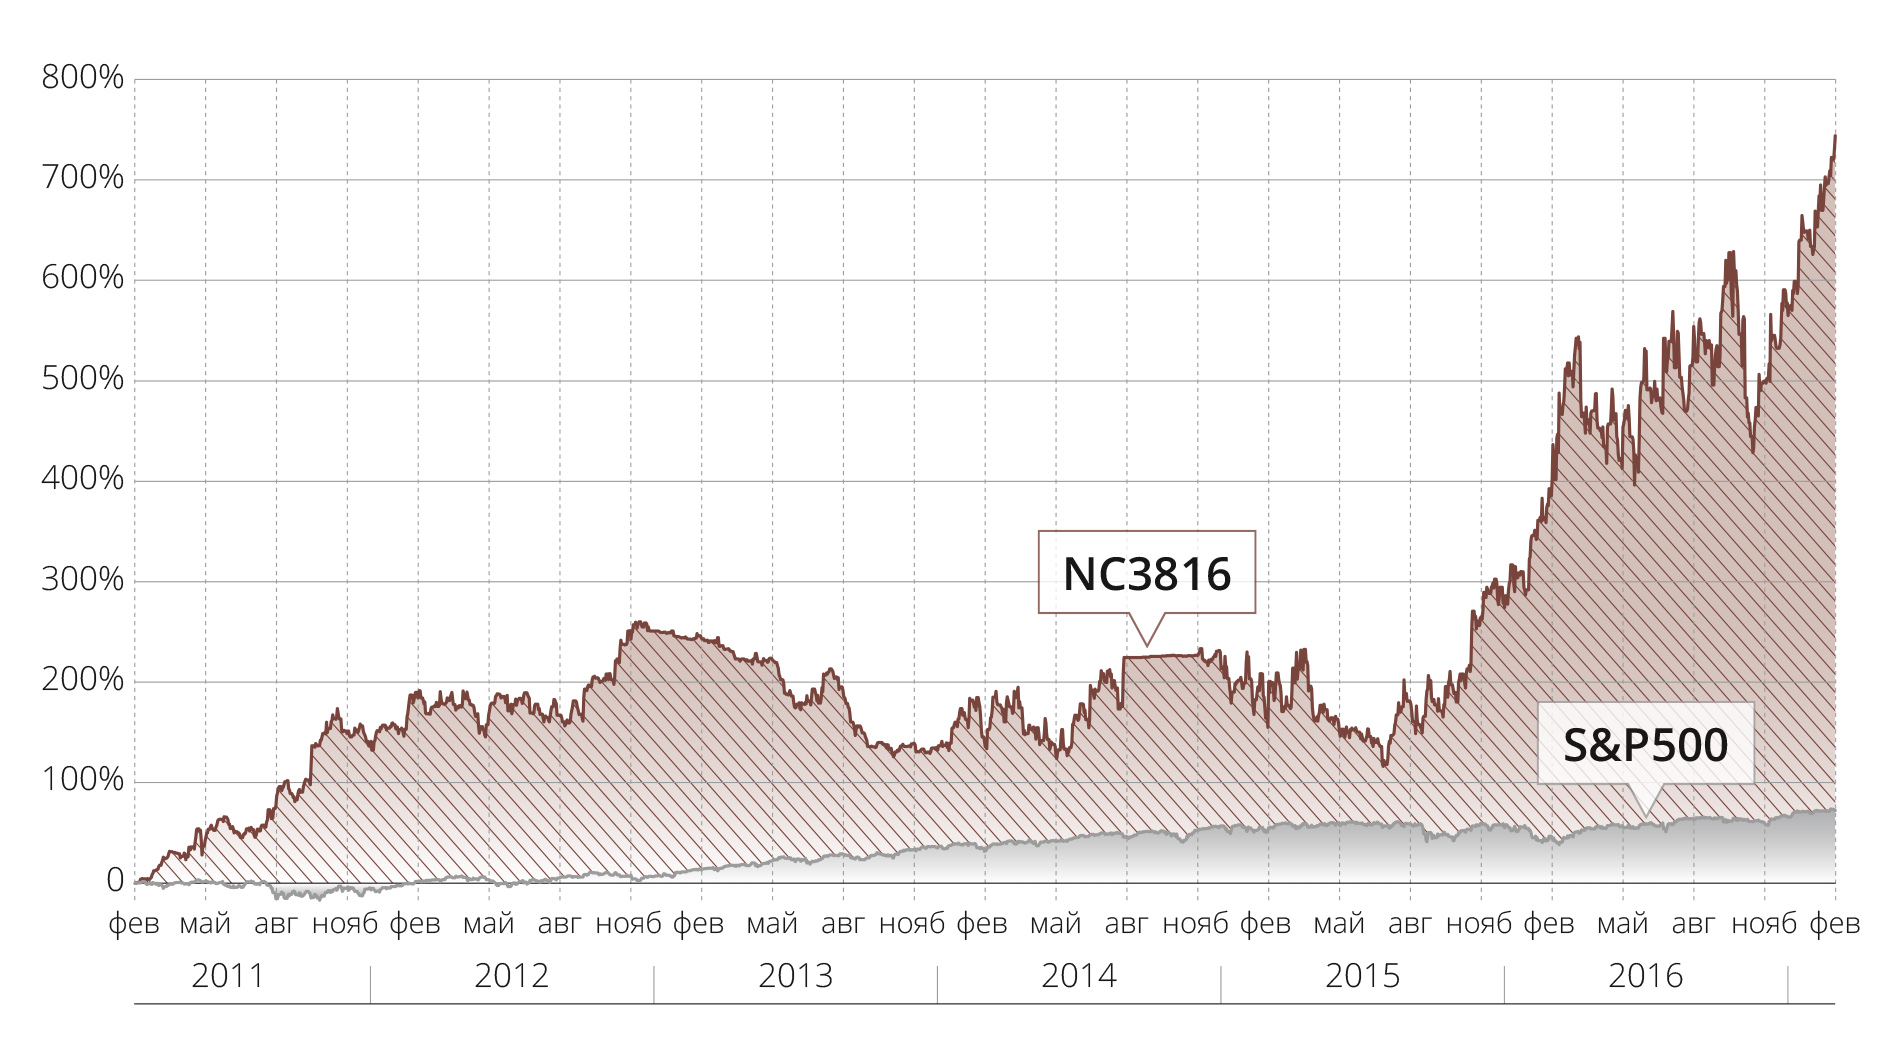 Сравнение доходности стратегии NC3816 с изменением индекса S&P500